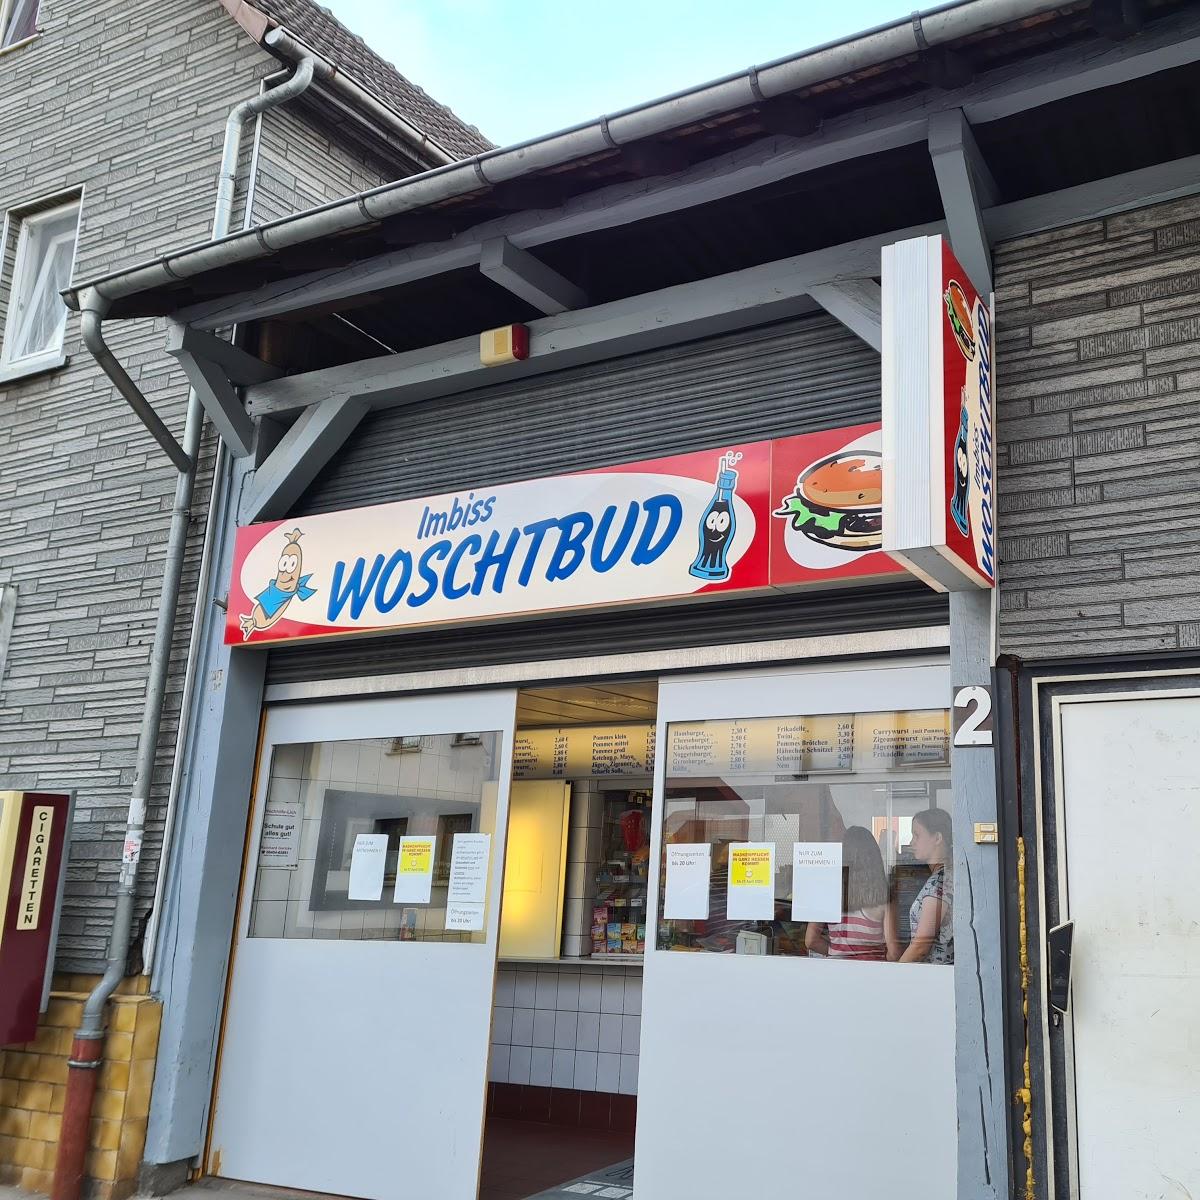 Restaurant "Woschtbud" in Pohlheim